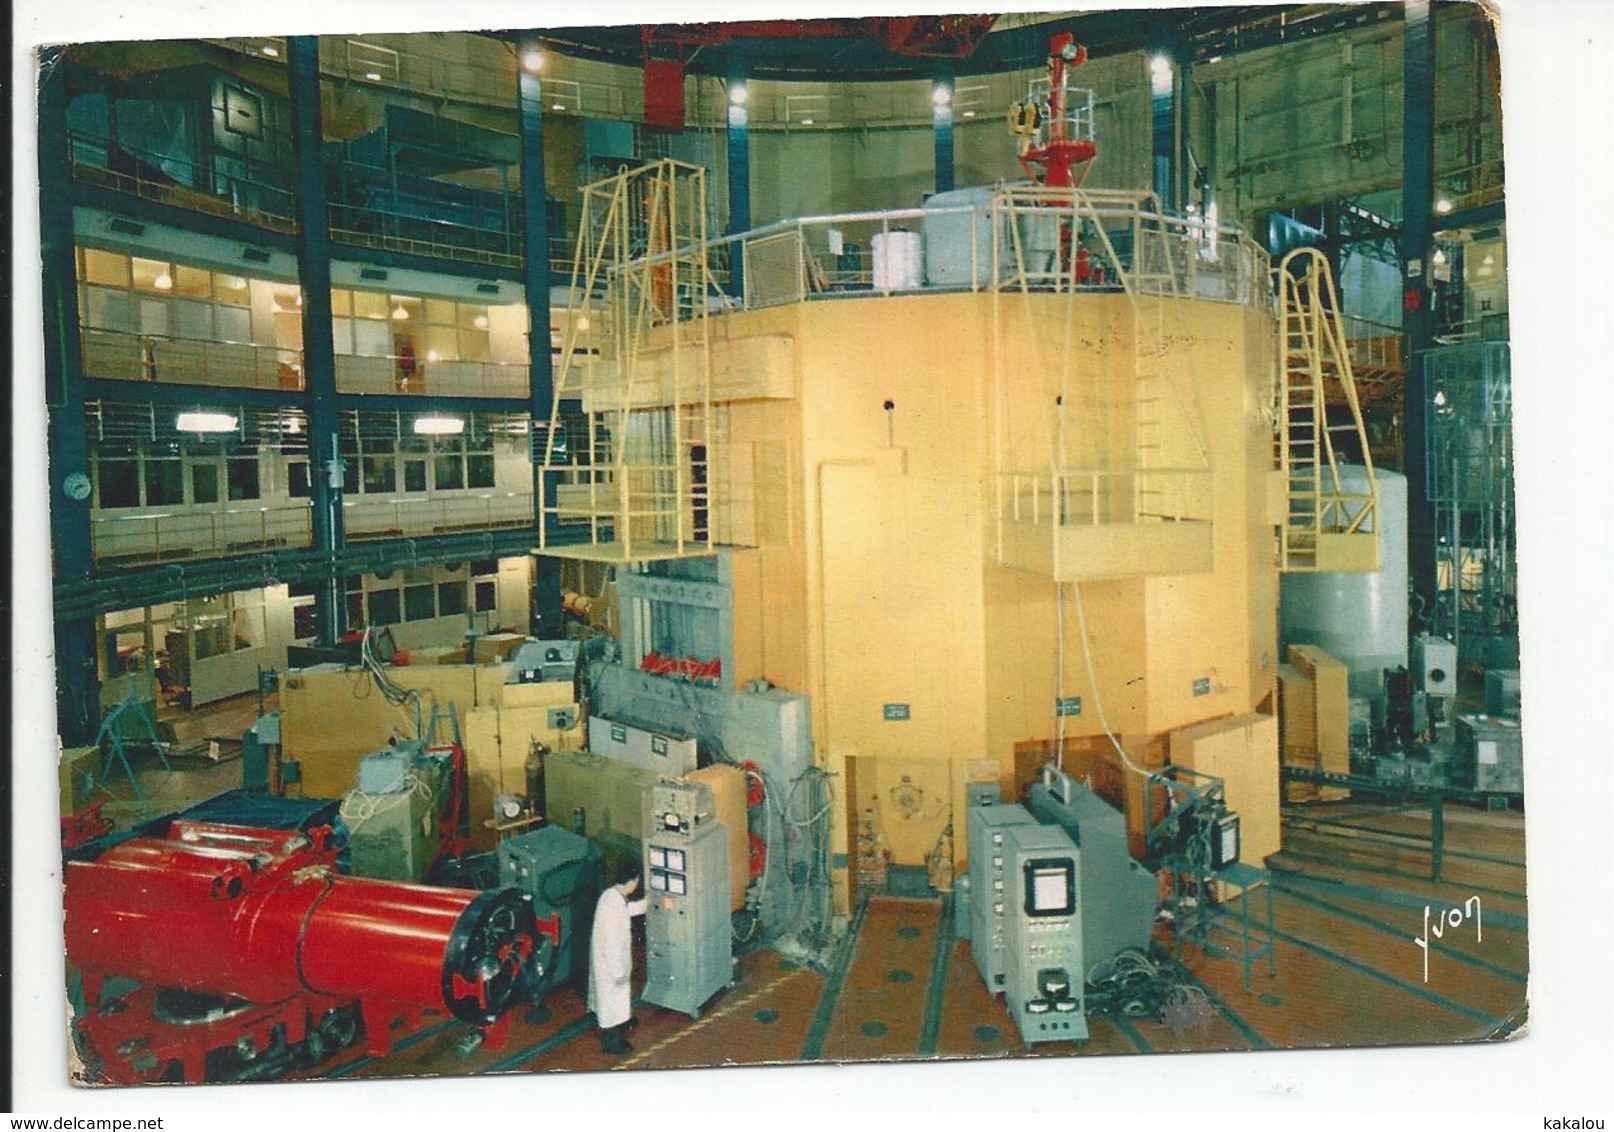 SACLAY (91) Réacteur EL3 - Saclay